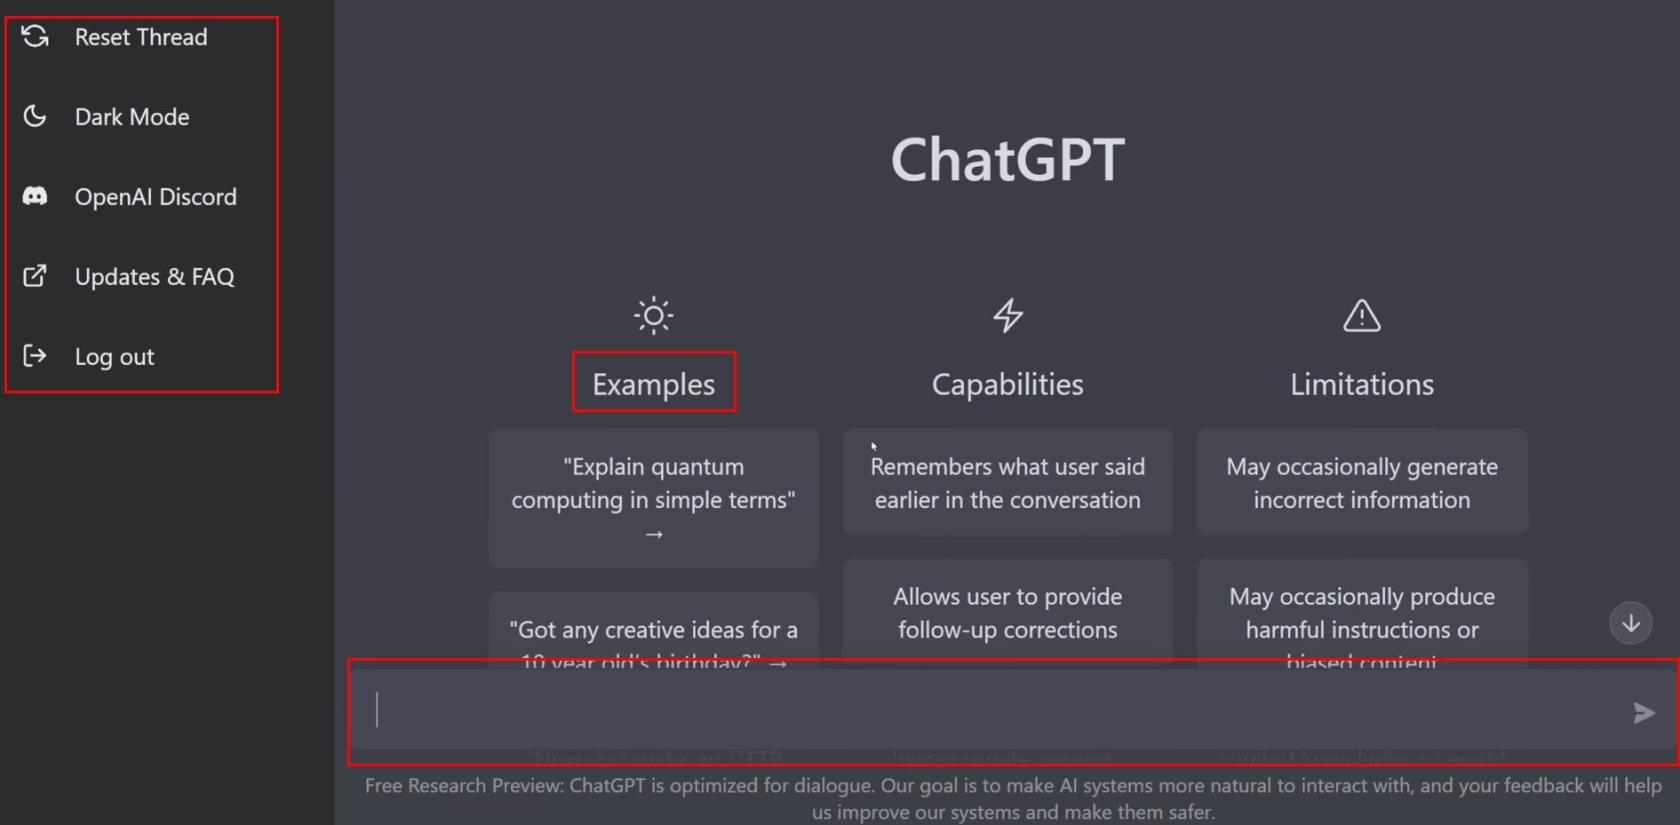 Kā lietot ChatGPT: soli pa solim paredzēta rokasgrāmata ikvienam